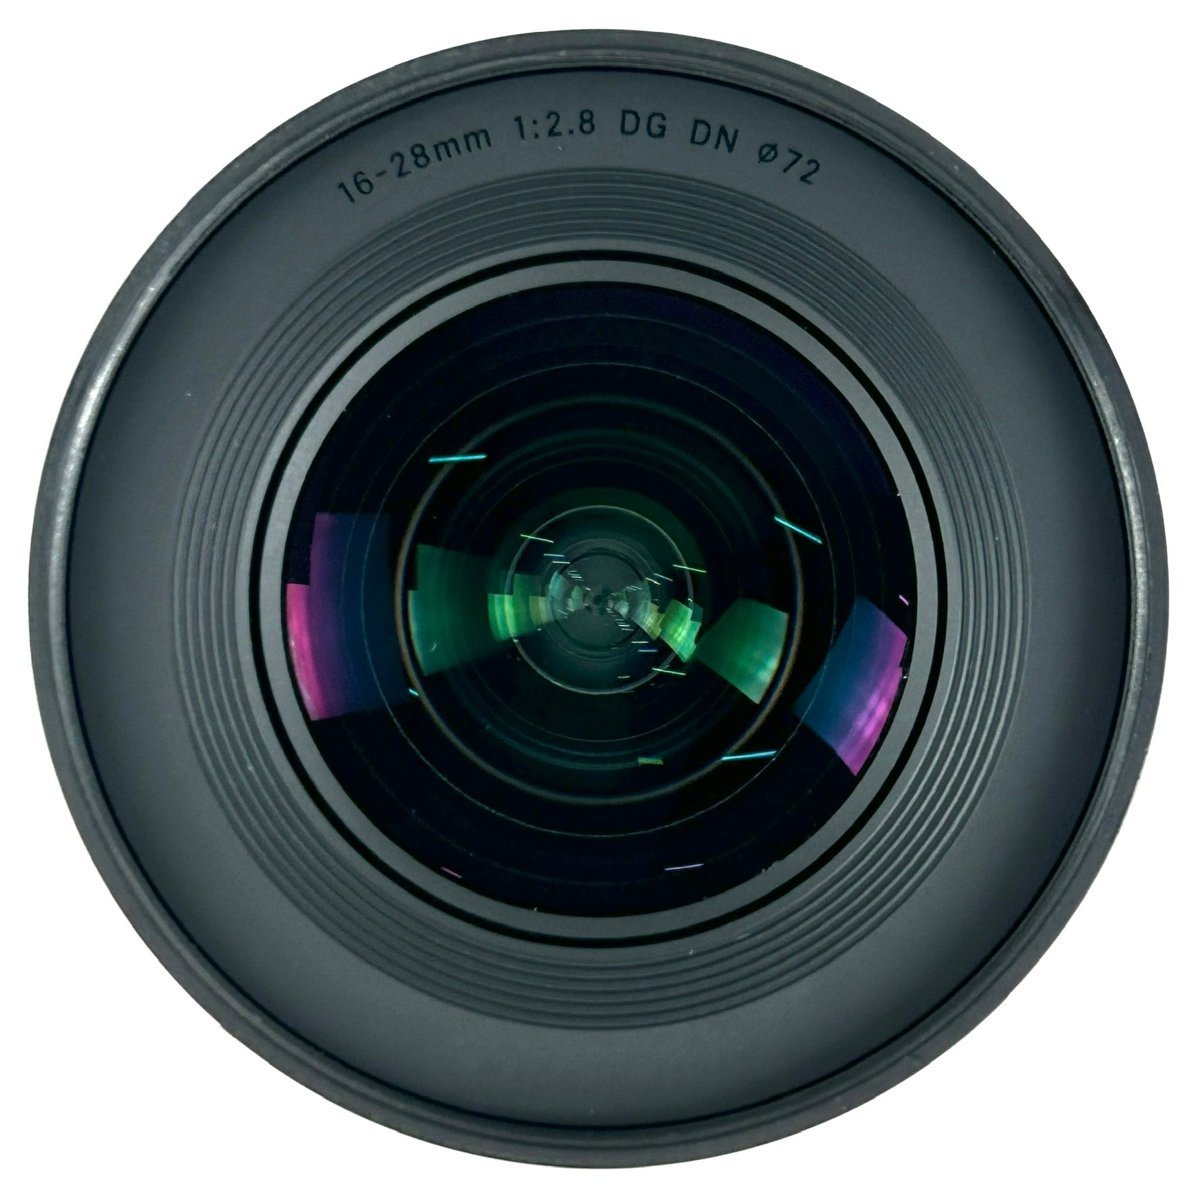 シグマ SIGMA C 16-28mm F2.8 DG DN (ソニー E用) 一眼カメラ用レンズ（オートフォーカス） 【中古】_バイセル 31064_4